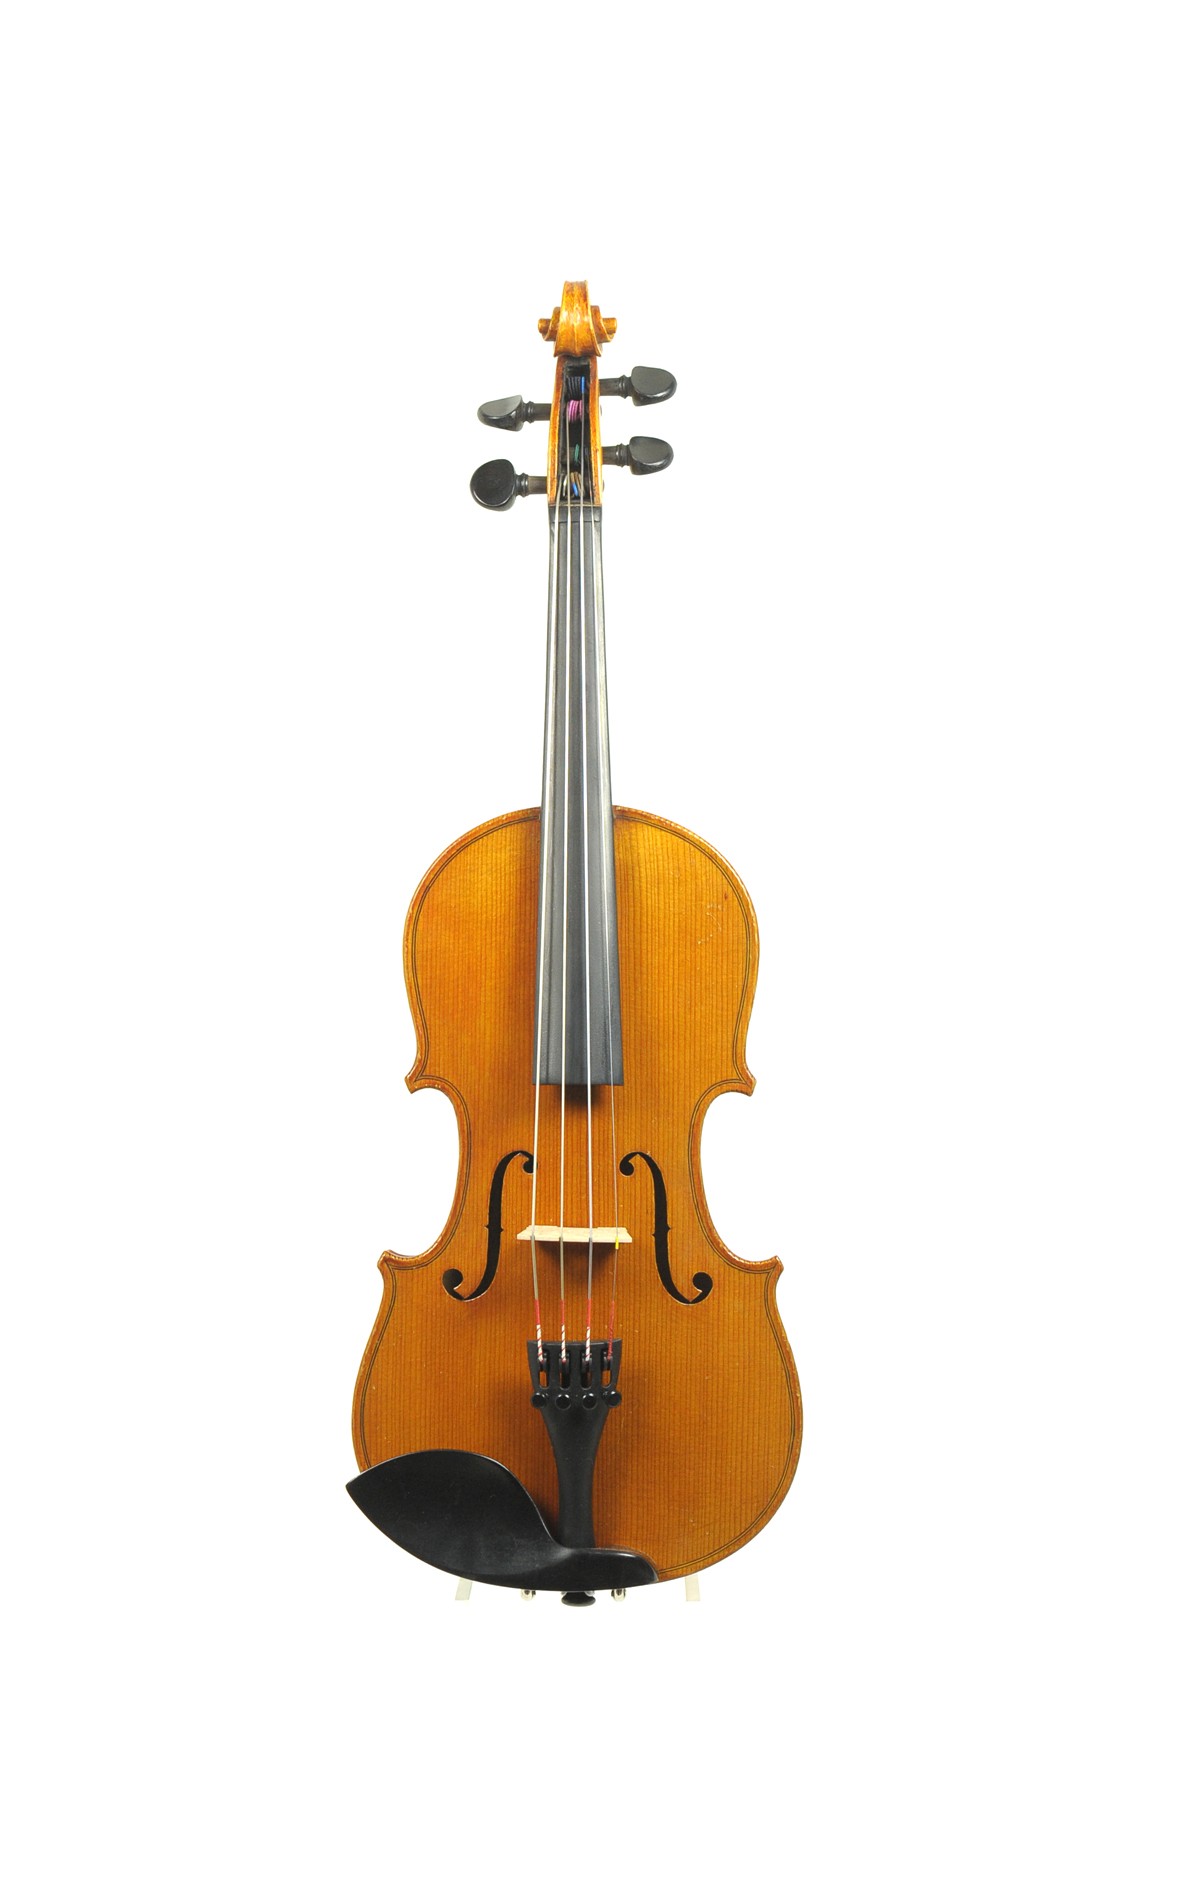 1/8  - Rare Mittenwald 1/8 violin by Adolf Hornsteiner